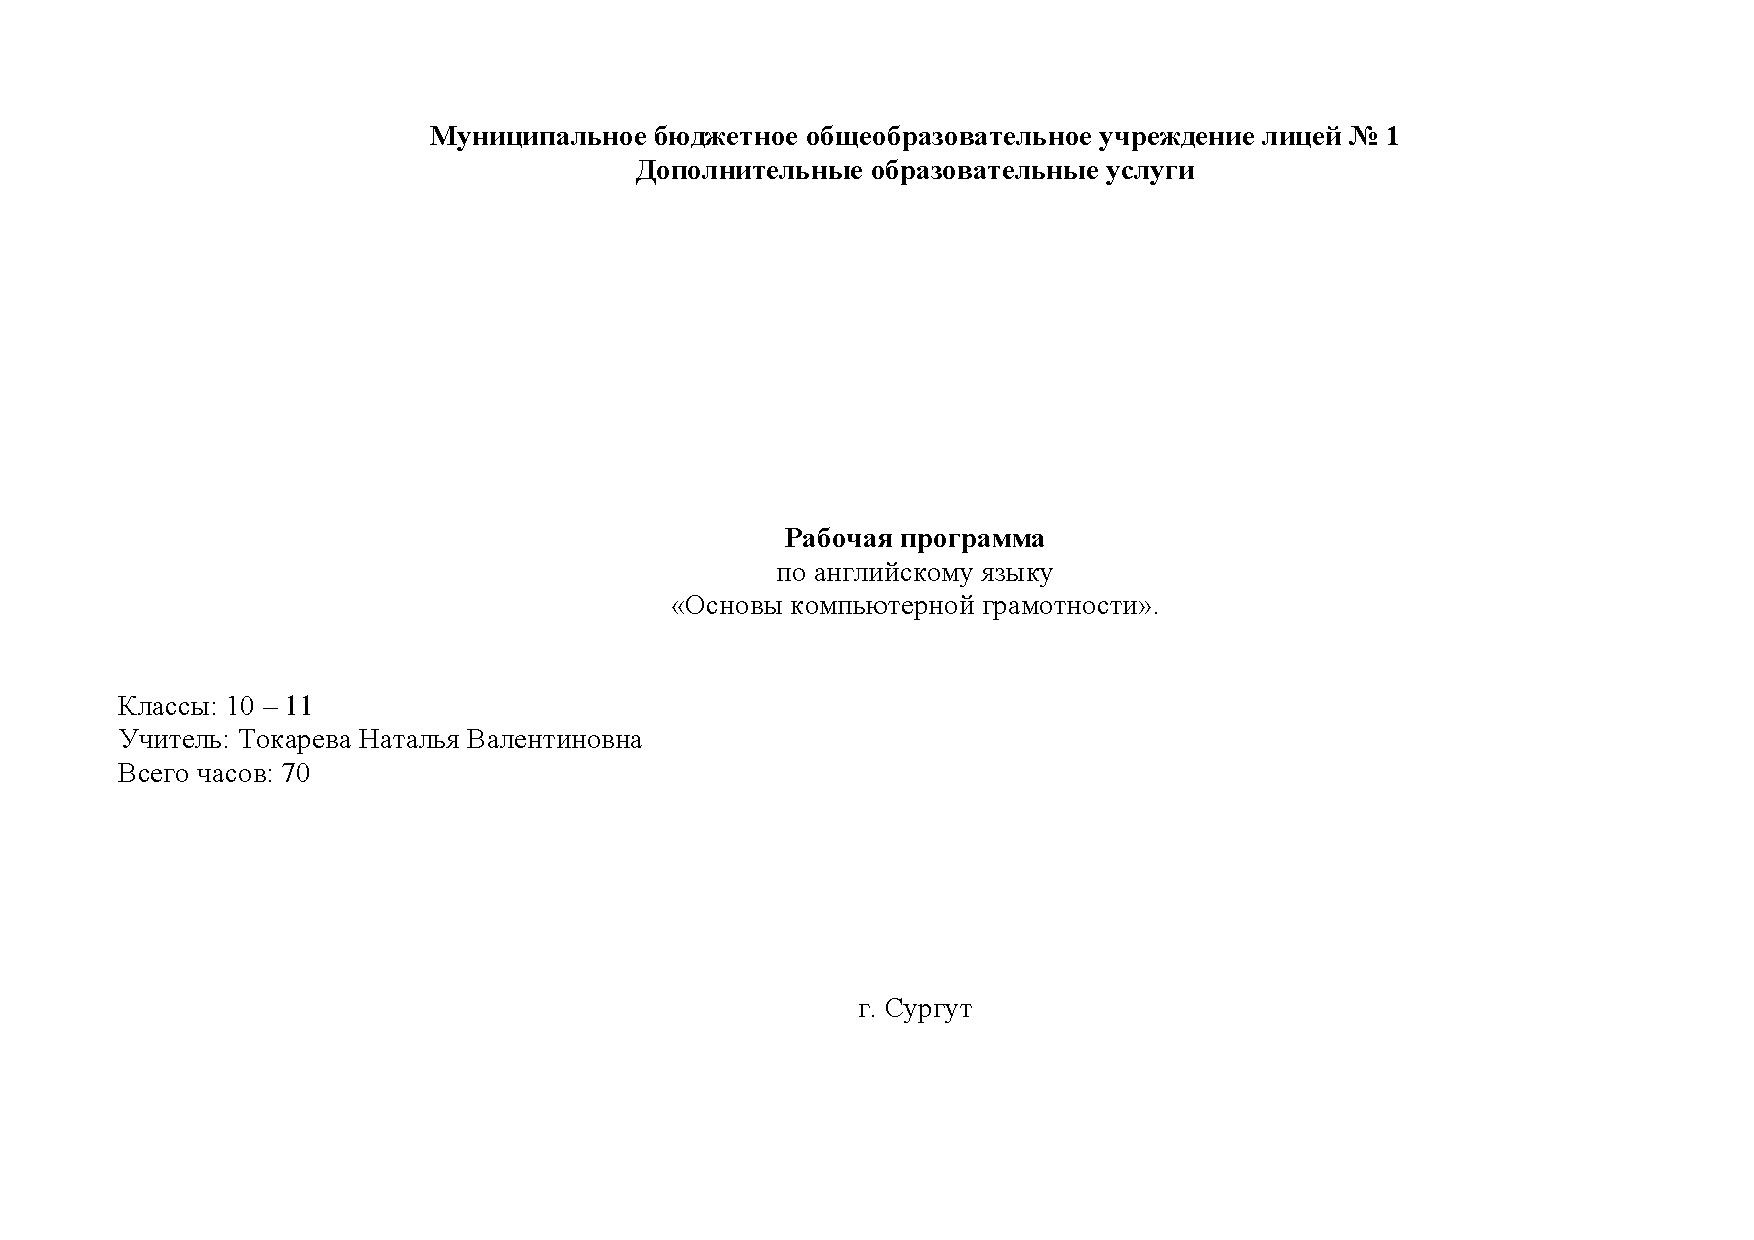 Программа Основы компьютерной грамотности Токарева Н.В..pdf